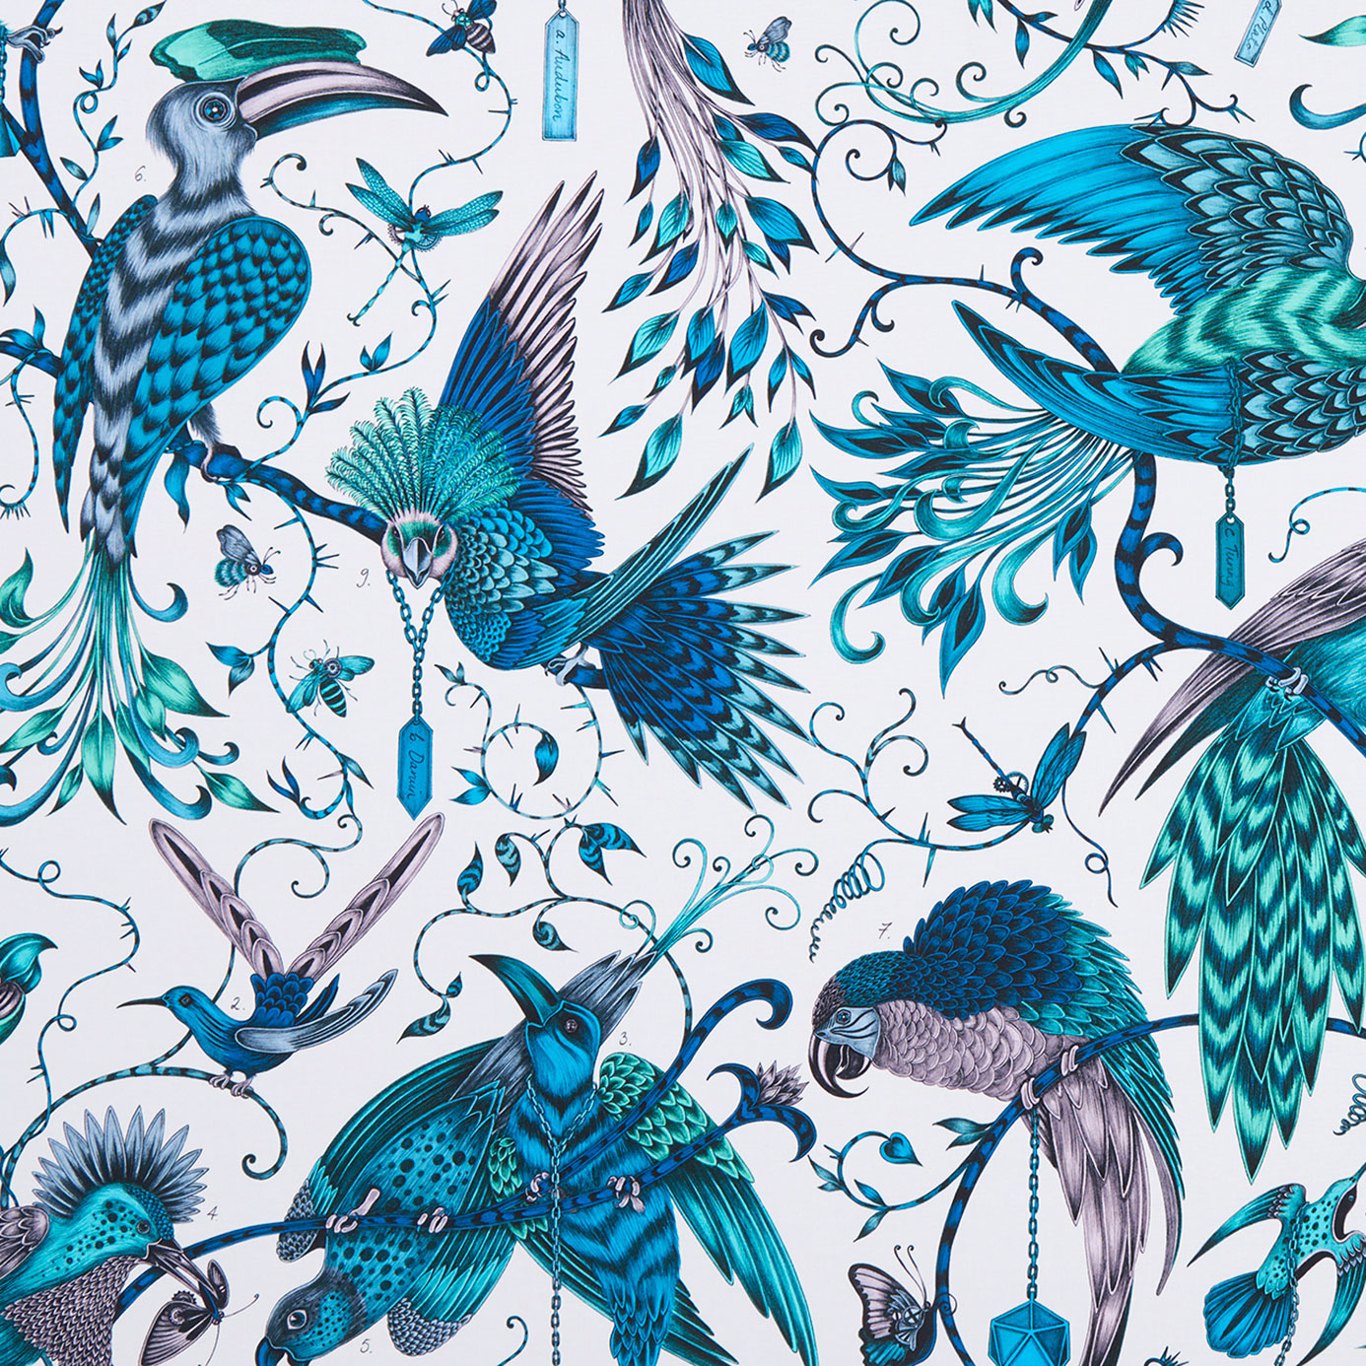 Audubon Jungle Fabric by CNC